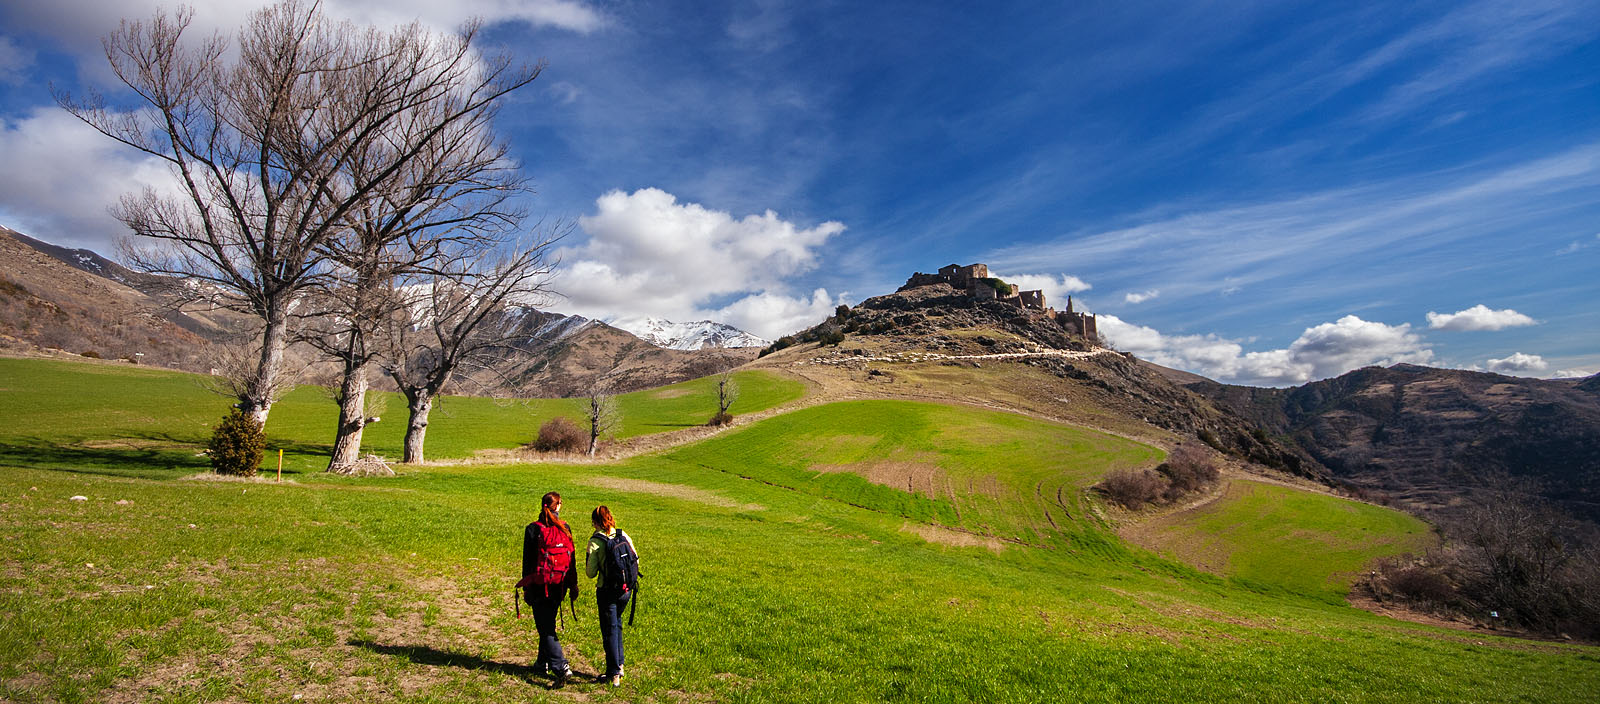 Parella caminant cap a Erillcastell - Excursió al Castell dels Senyors d'Erill - Roger Gras Guia d'Aigüestortes - Vall de Boí - Pirineus